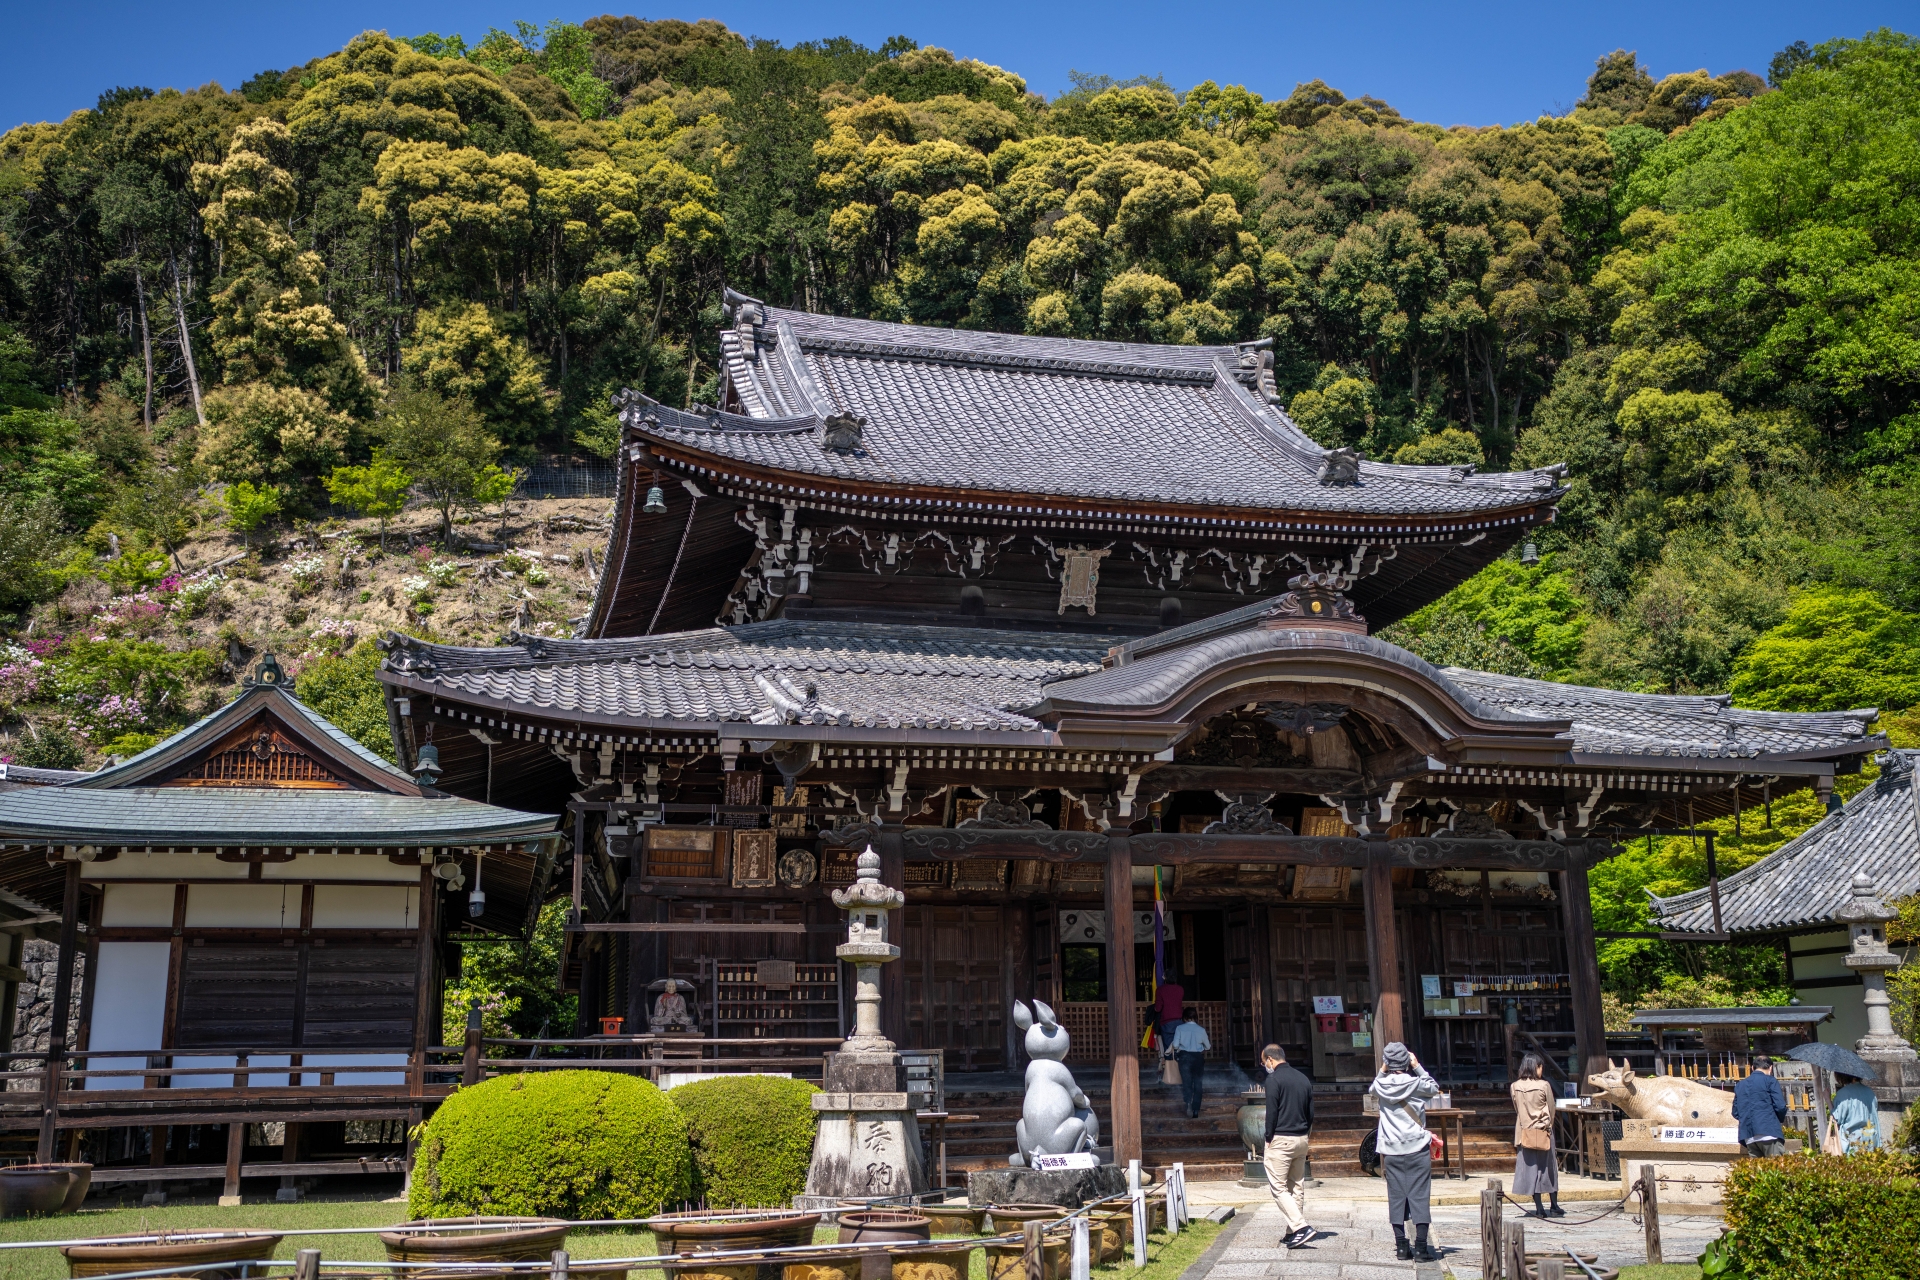 Mimurotoji Temple